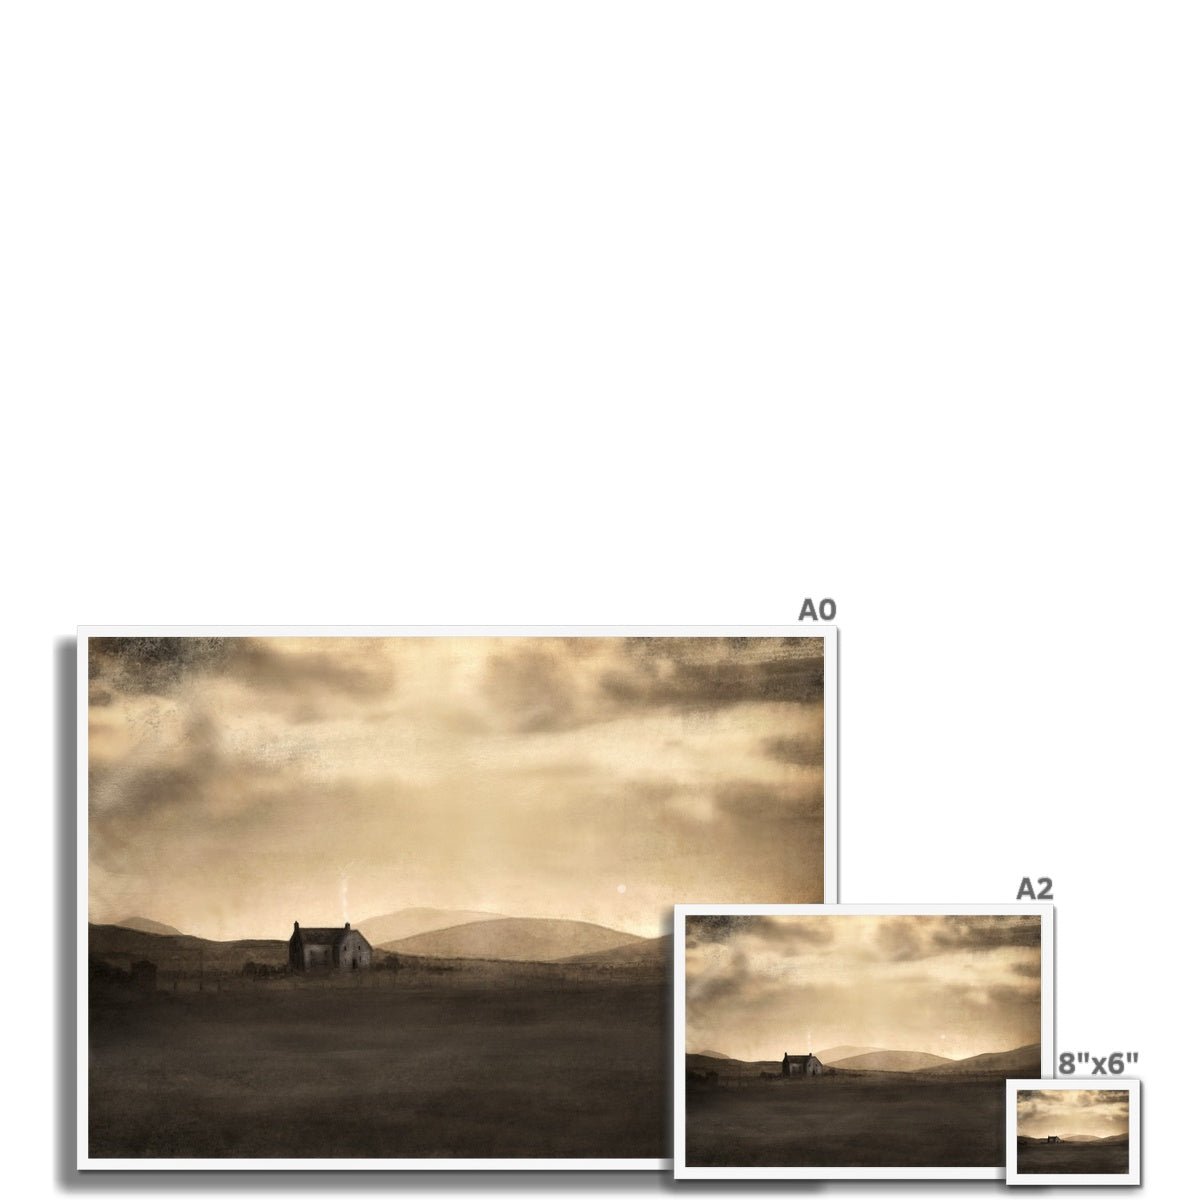 A Moonlit Croft Painting | Framed Prints From Scotland-Framed Prints-Hebridean Islands Art Gallery-Paintings, Prints, Homeware, Art Gifts From Scotland By Scottish Artist Kevin Hunter